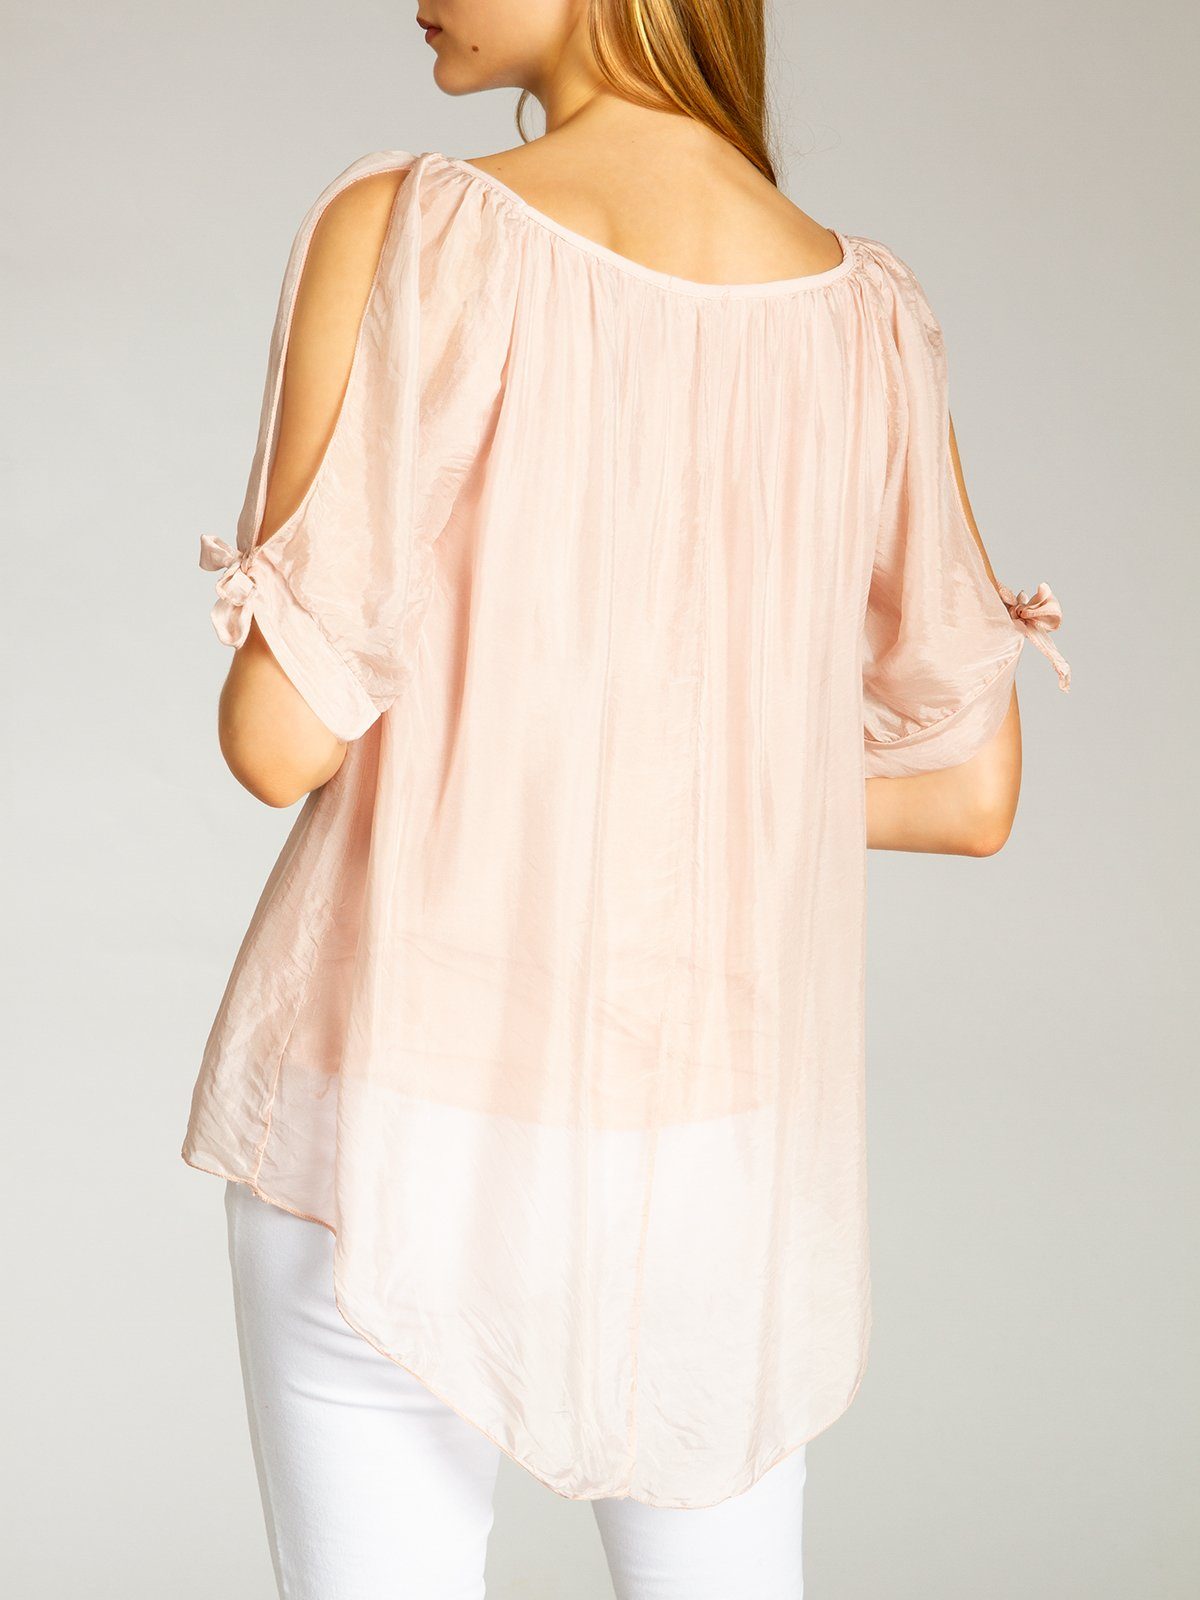 Shirtbluse BLU020 mit Bluse Damen Sommer leichte Seidenanteil elegante lange rosa Caspar